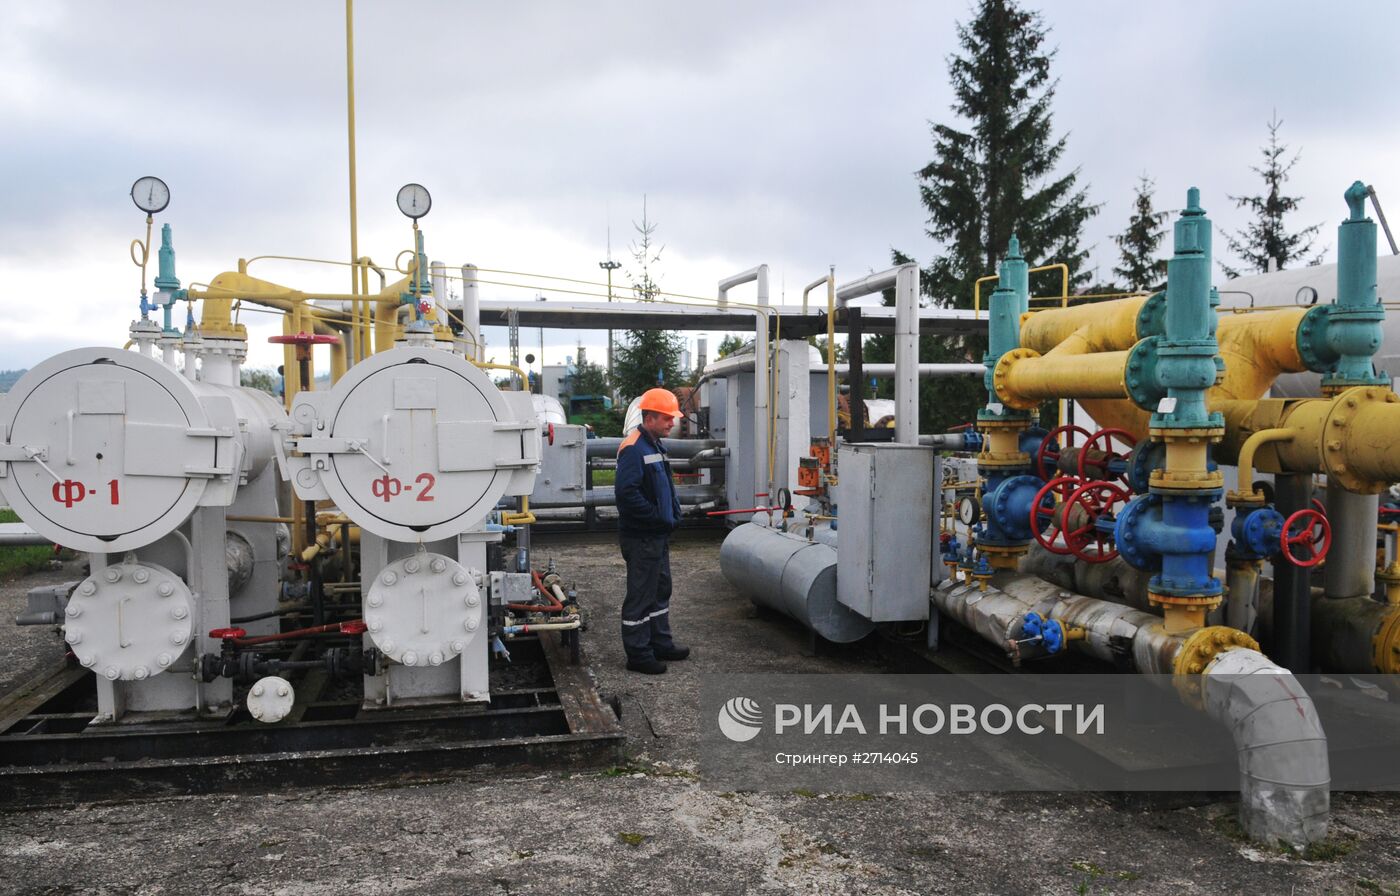 Высокогорная газокомпрессорная станция "Воловец" в Закарпатской области